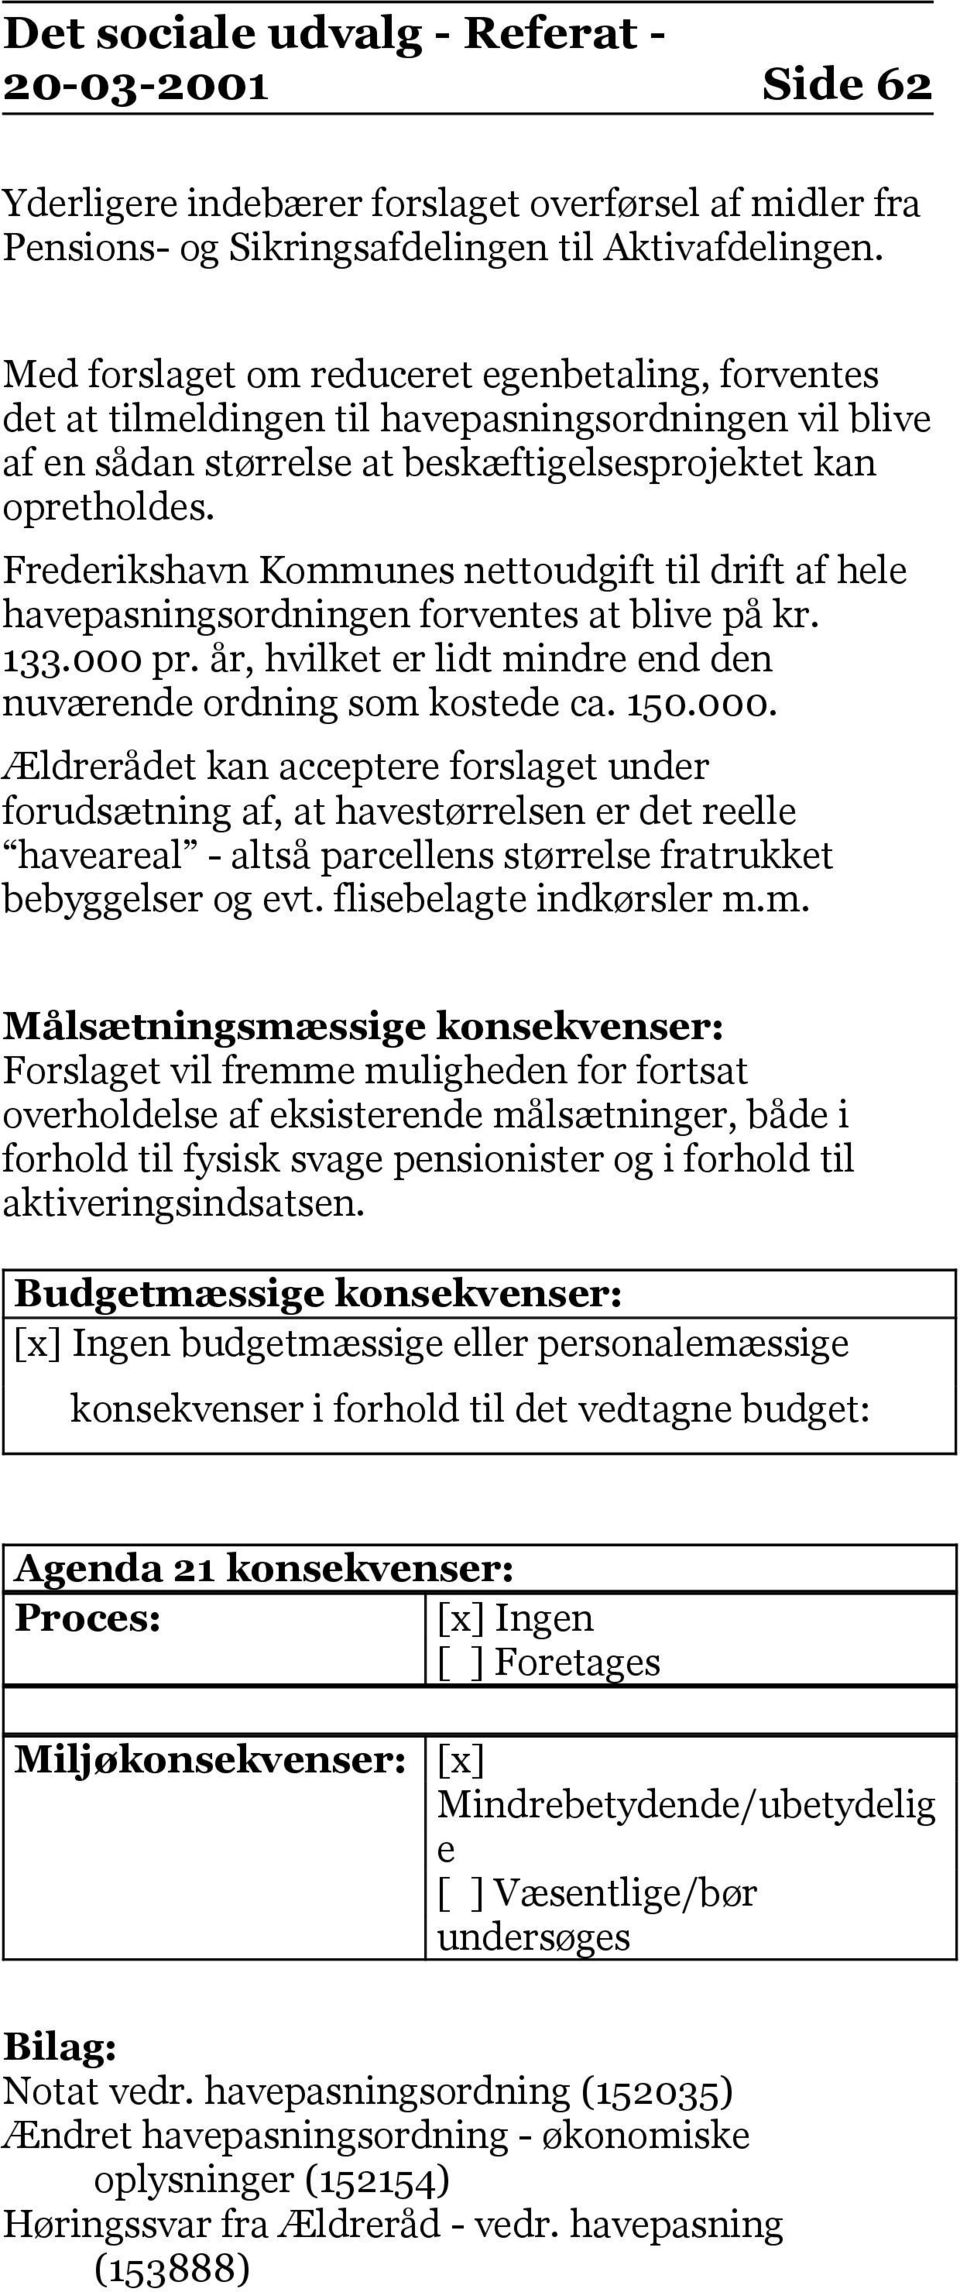 Frederikshavn Kommunes nettoudgift til drift af hele havepasningsordningen forventes at blive på kr. 133.000 